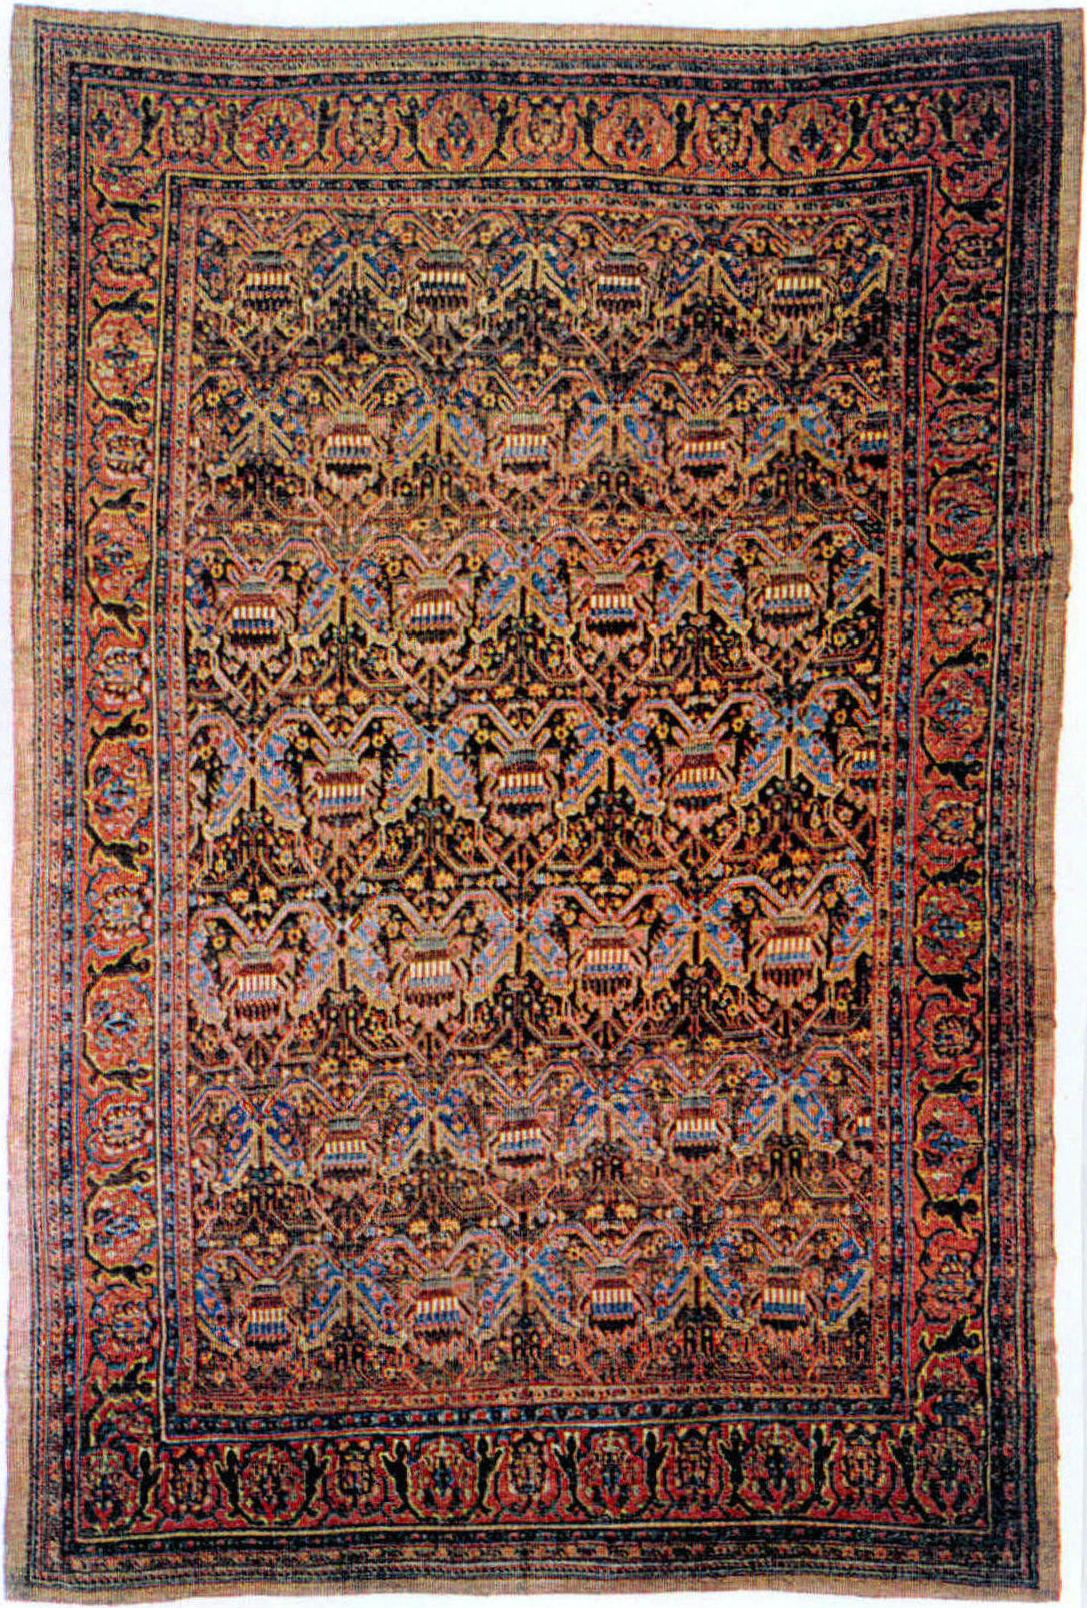 1830年 以软色调及雄浑风格著称的波斯地毯